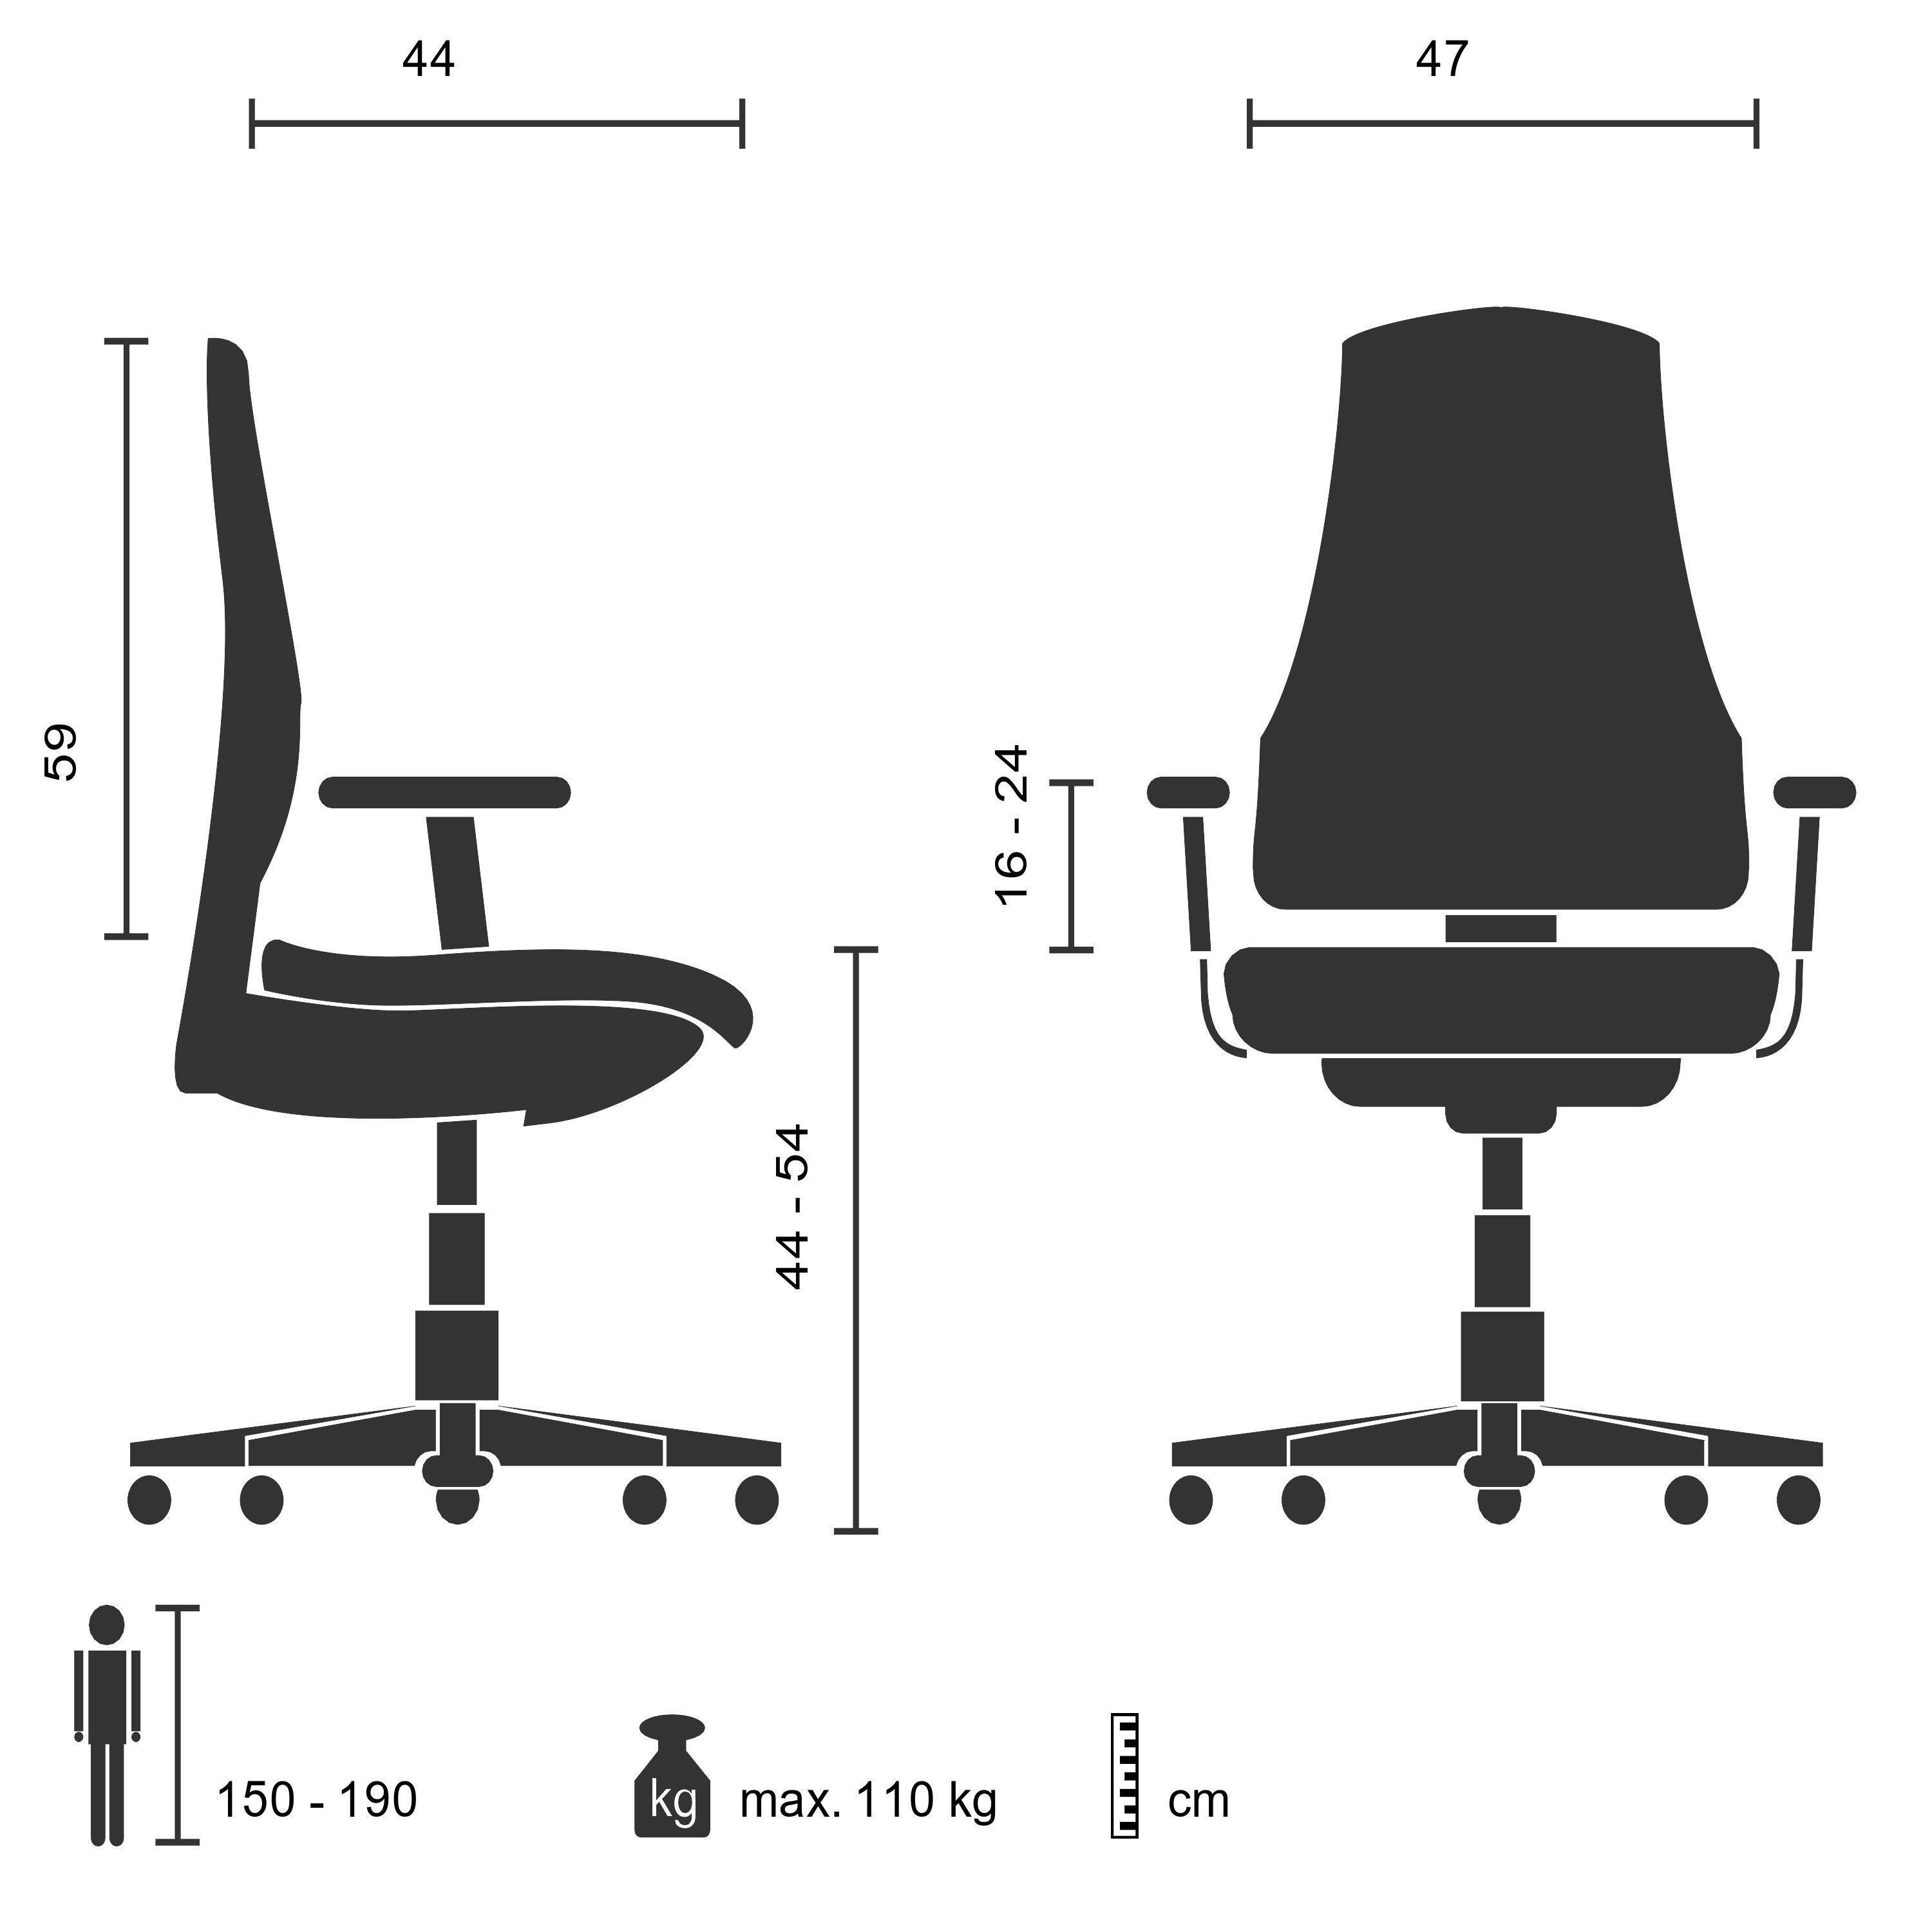 hjh OFFICE Drehstuhl Profi Stoff Schwarz/Blau ergonomisch St), Schreibtischstuhl Bürostuhl LAVITA (1